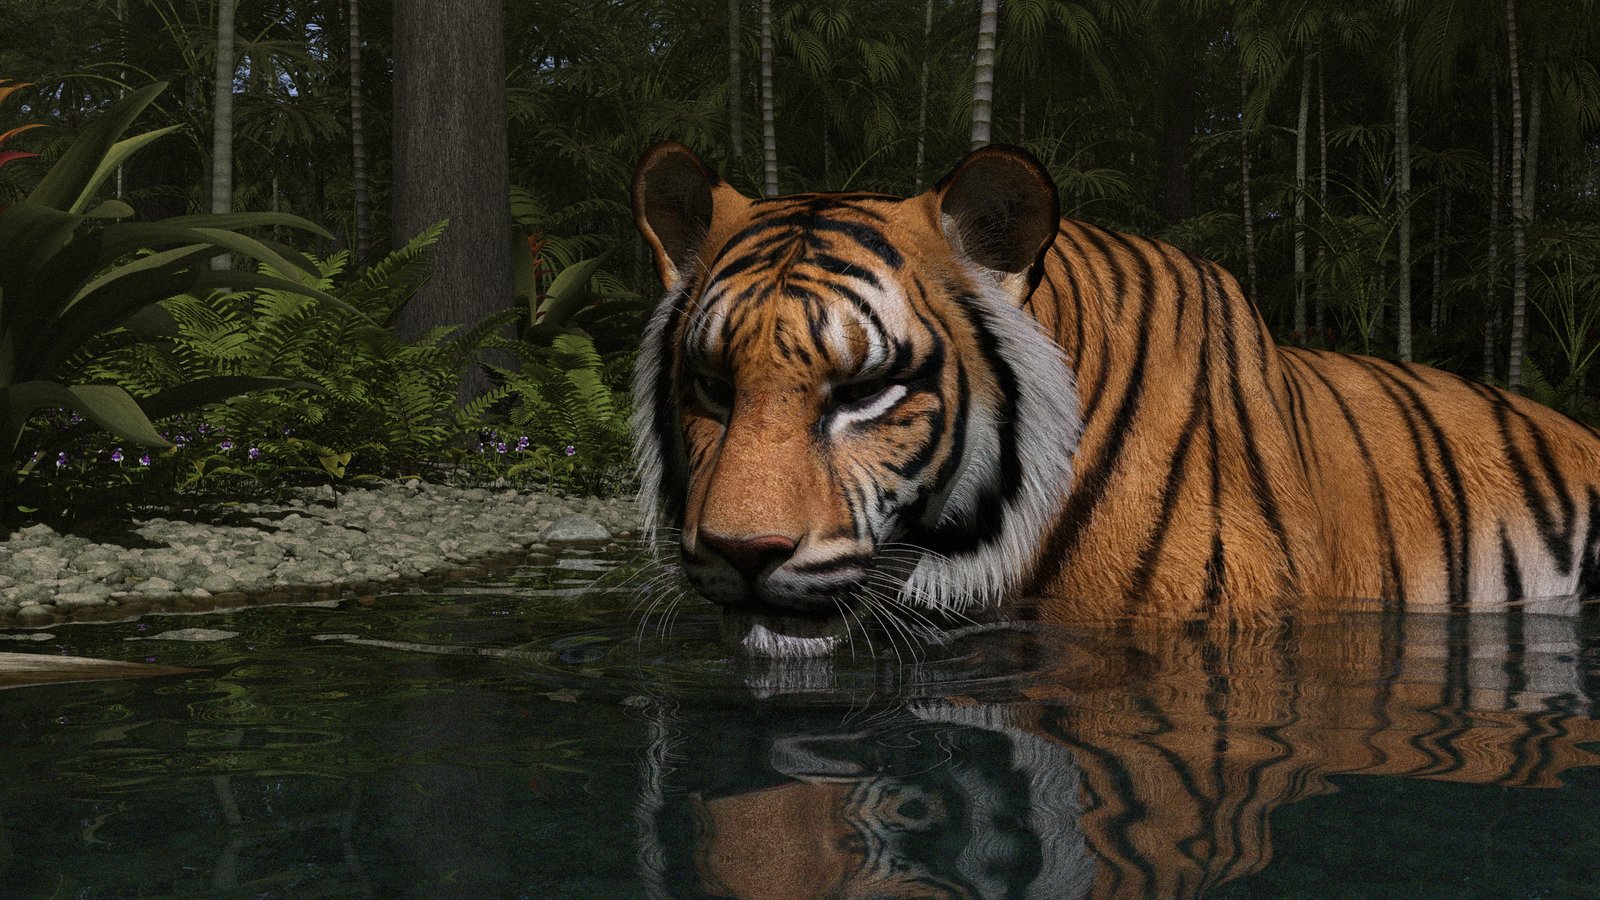 Tiger Cooling Off 02.jpg